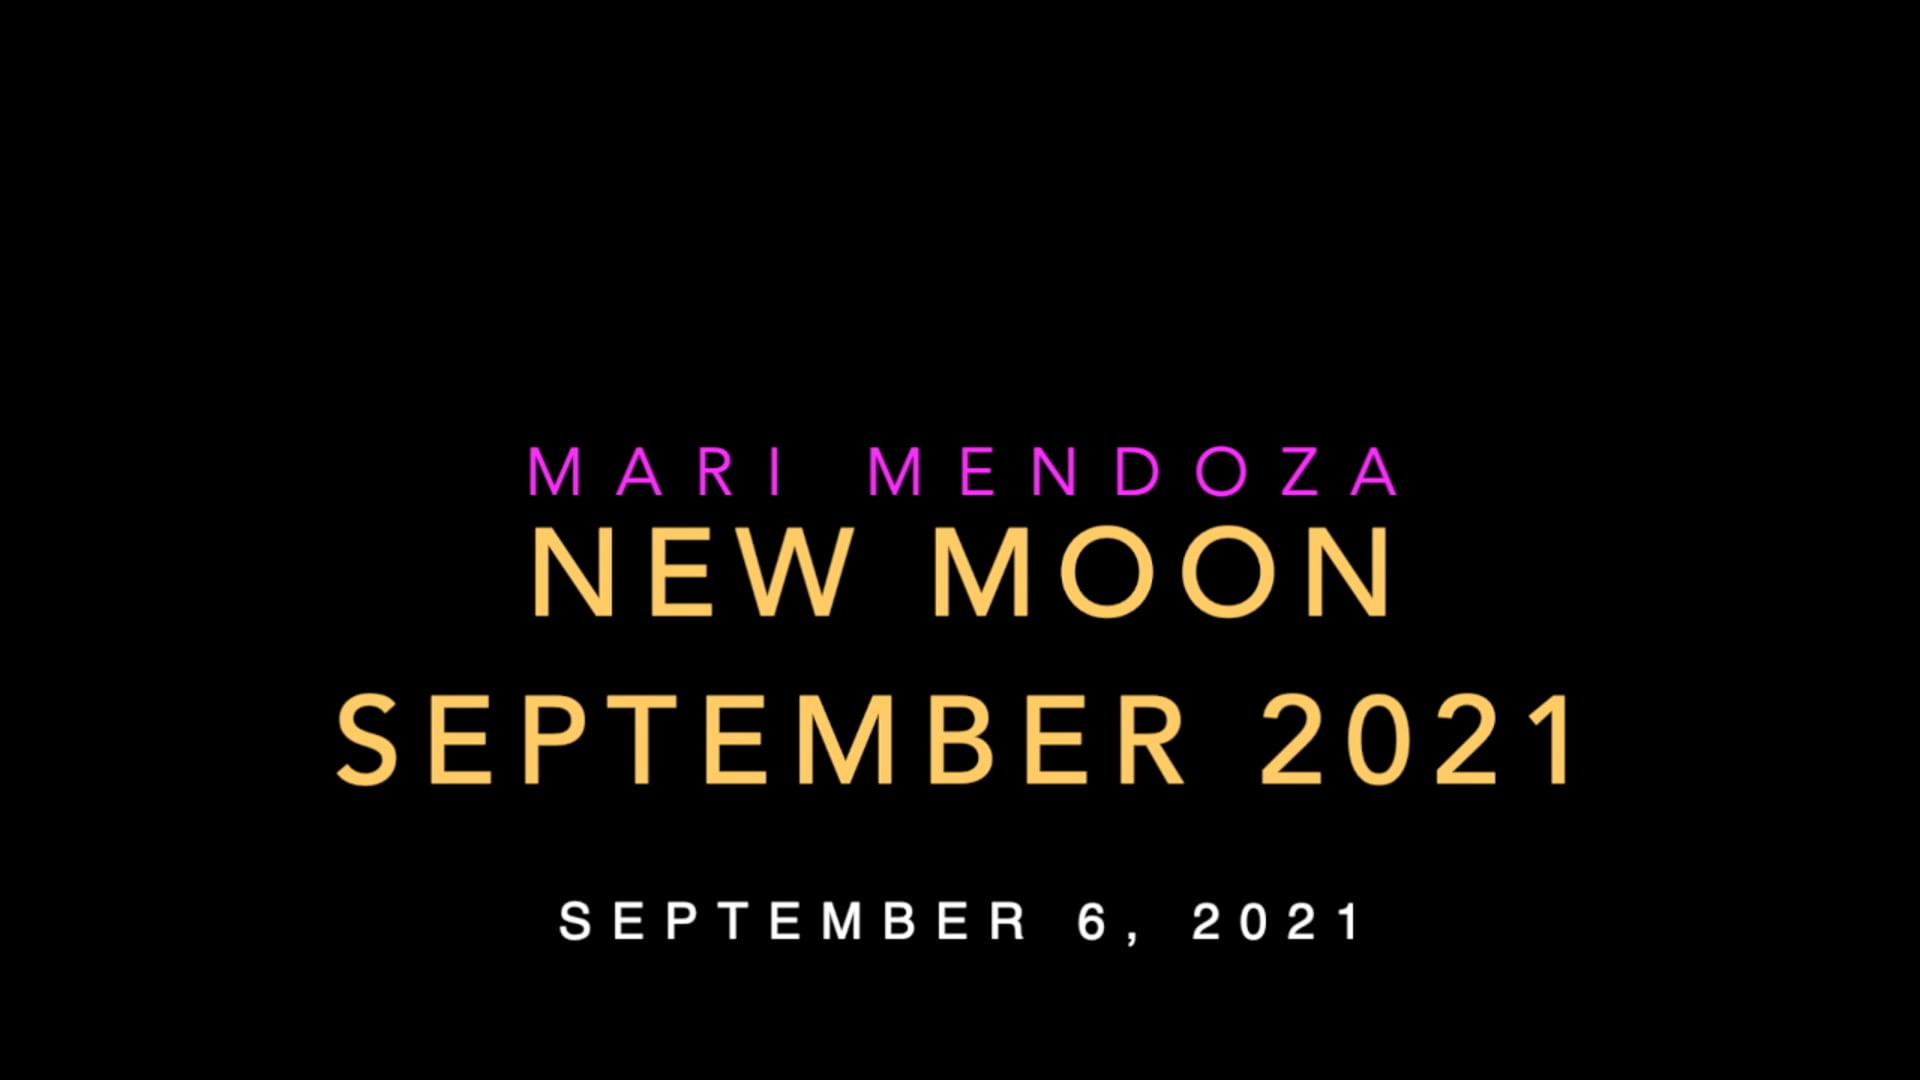 New Moon - September 6, 2021